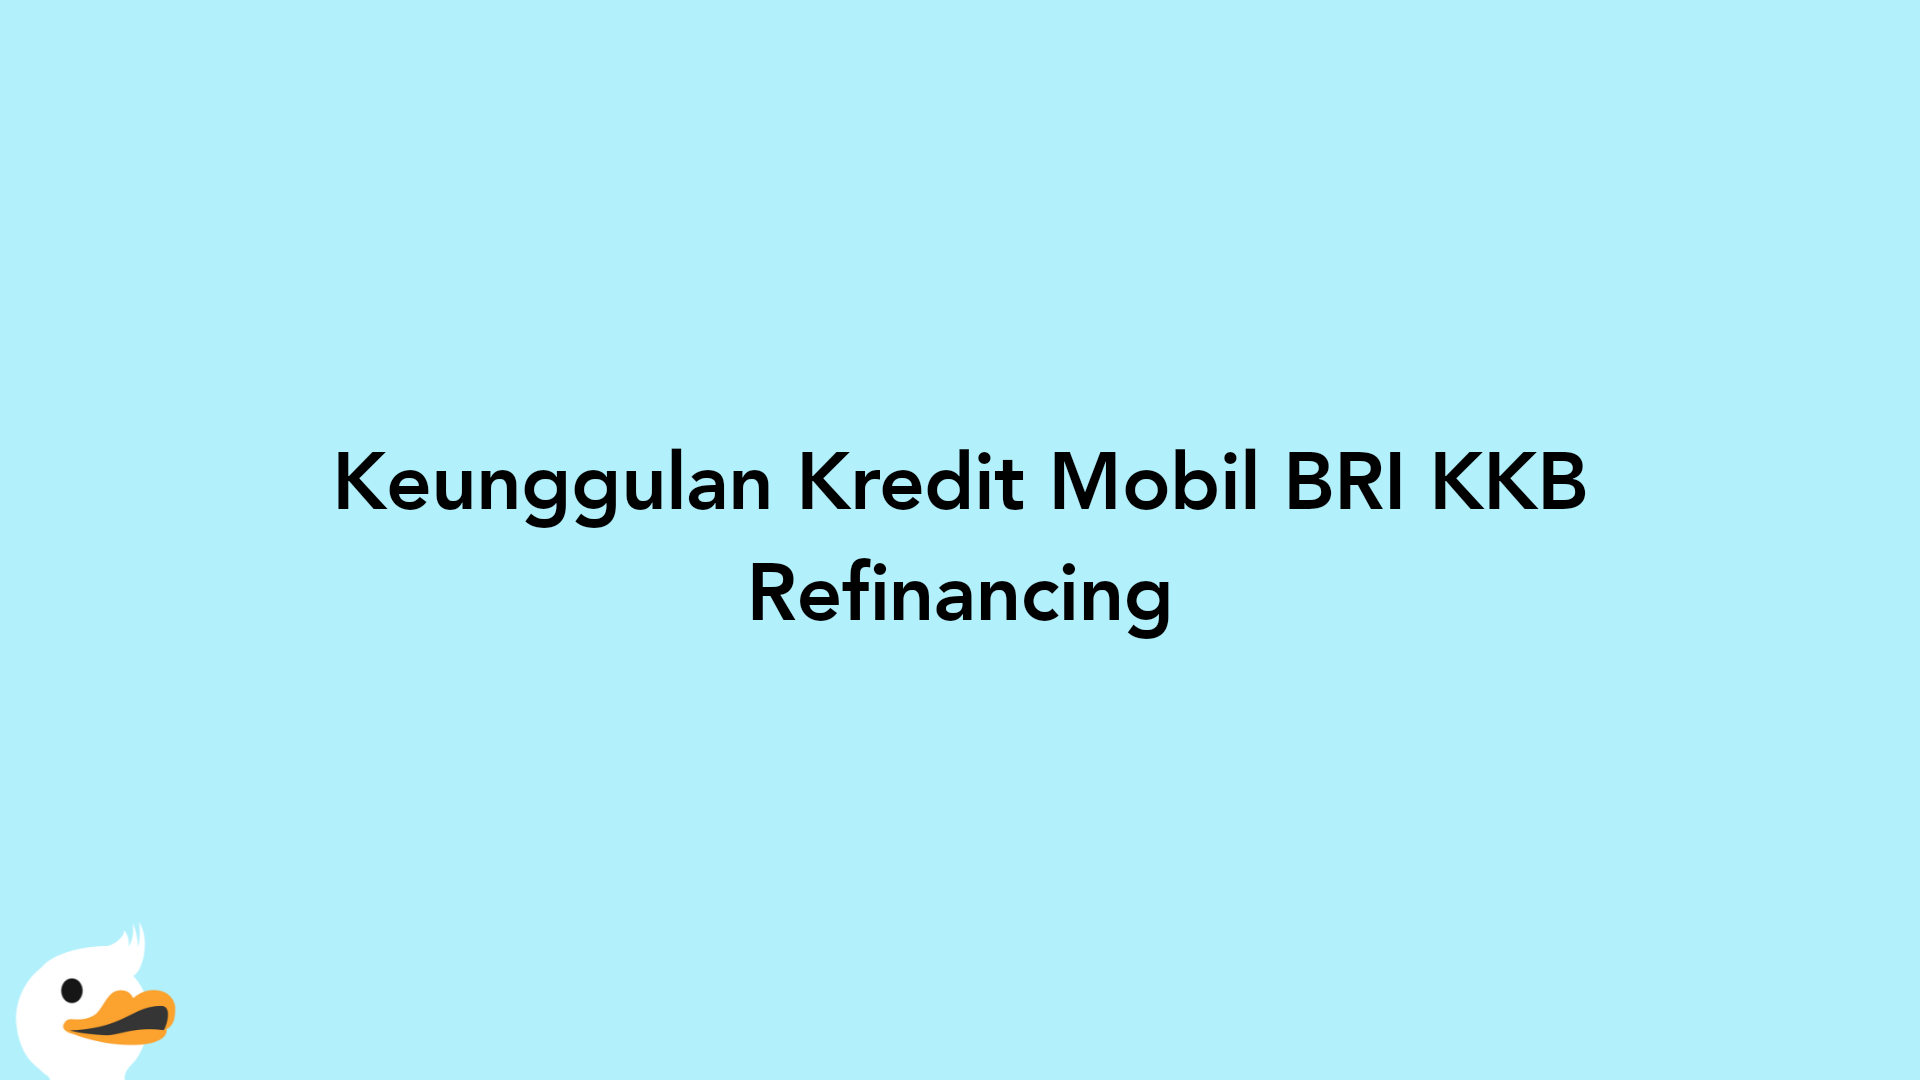 Keunggulan Kredit Mobil BRI KKB Refinancing